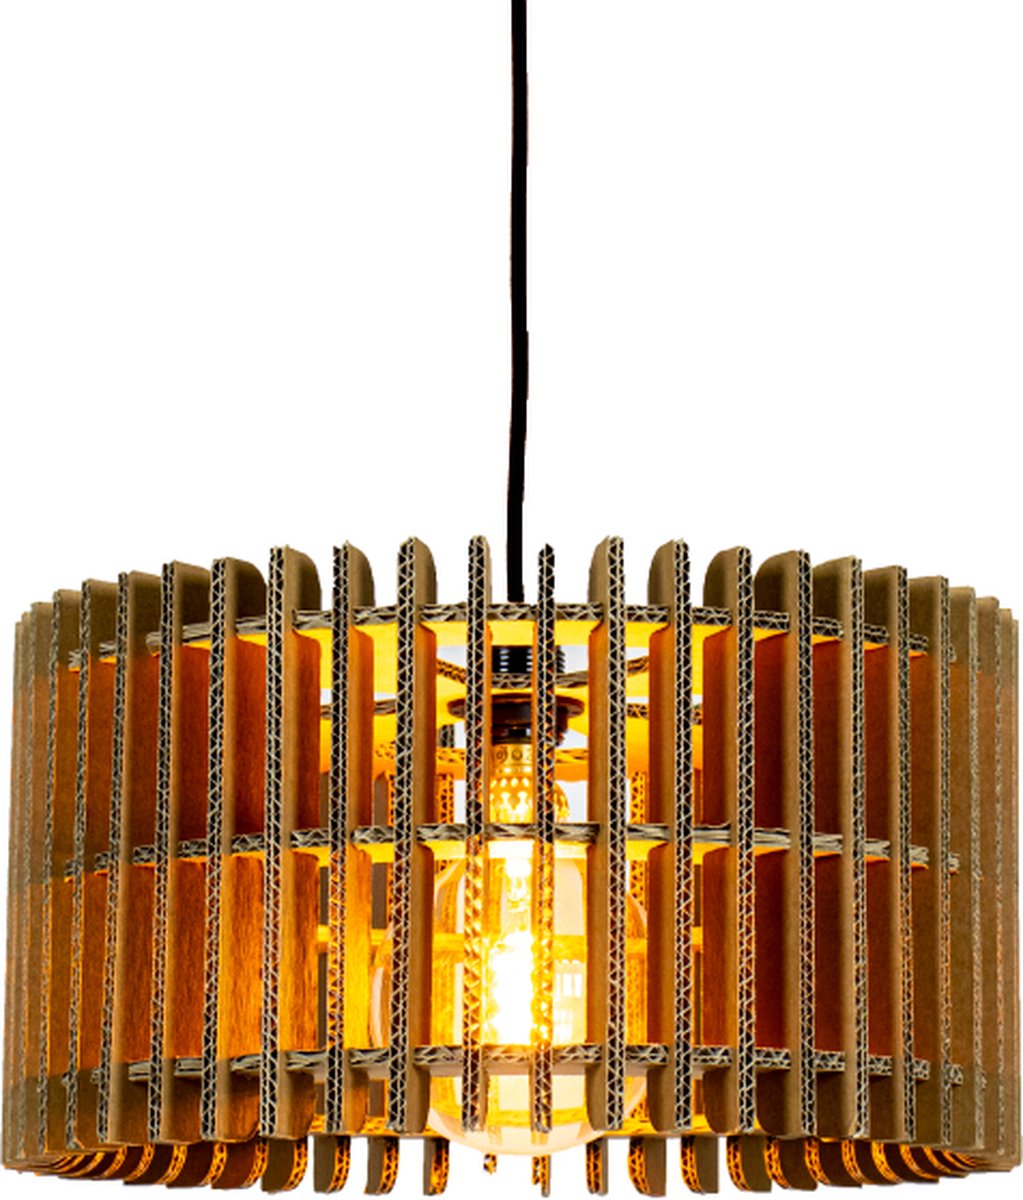 Kartonnen Leeuwarden Lamp - Maat XL - Hanglamp van karton - E27 fitting - 60x60x22 cm - Lampenkap - KarTent